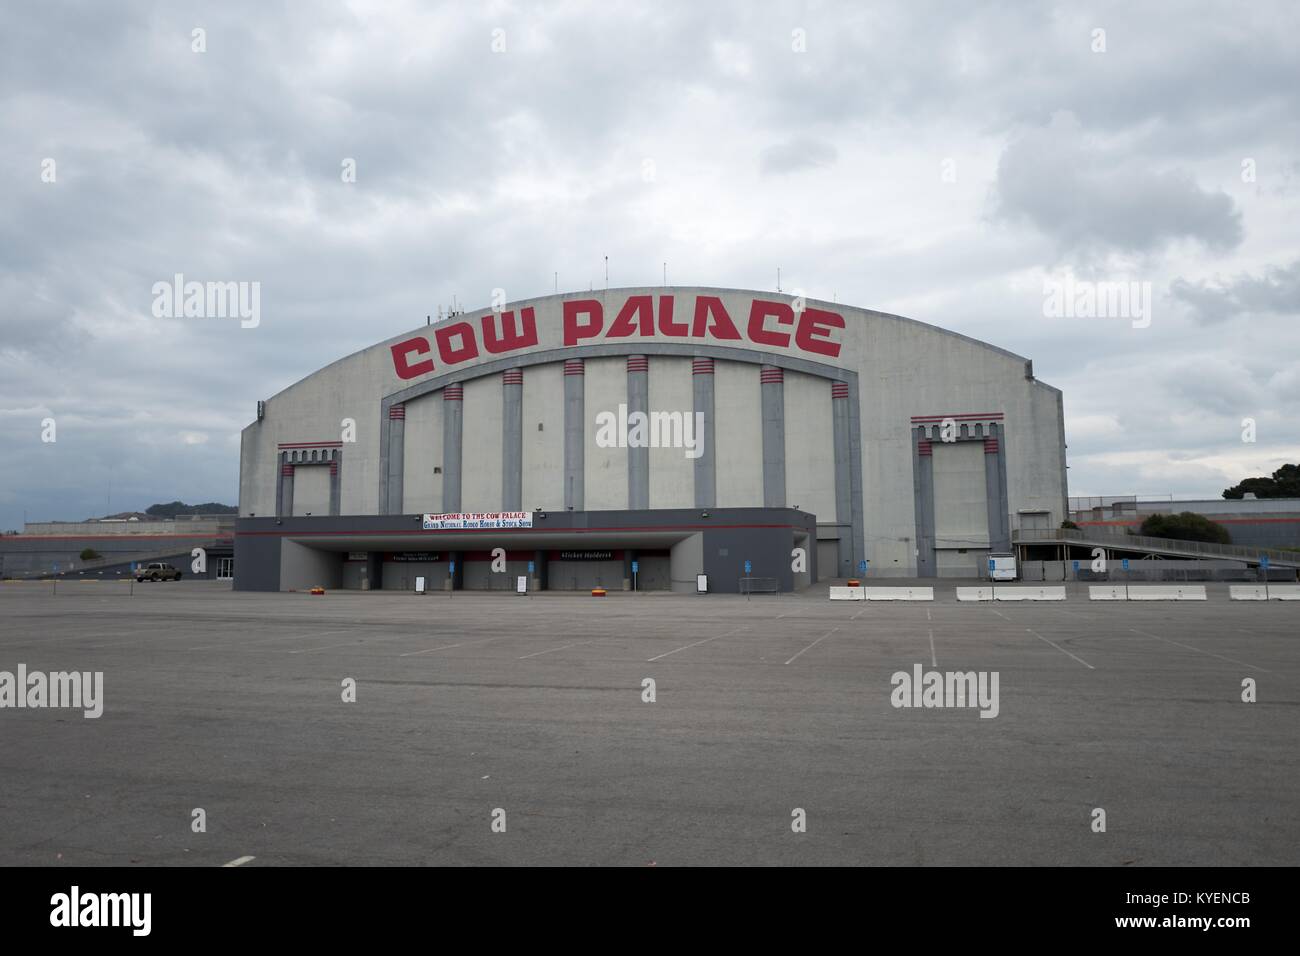 Fassade der Cow Palace an einem bewölkten Tag, eine Sport- und Entertainment Arena bekannt für große Veranstaltungen und Rodeos, in der San Francisco Bay Area Stadt von Daly City, Kalifornien, November 3, 2017. () Stockfoto